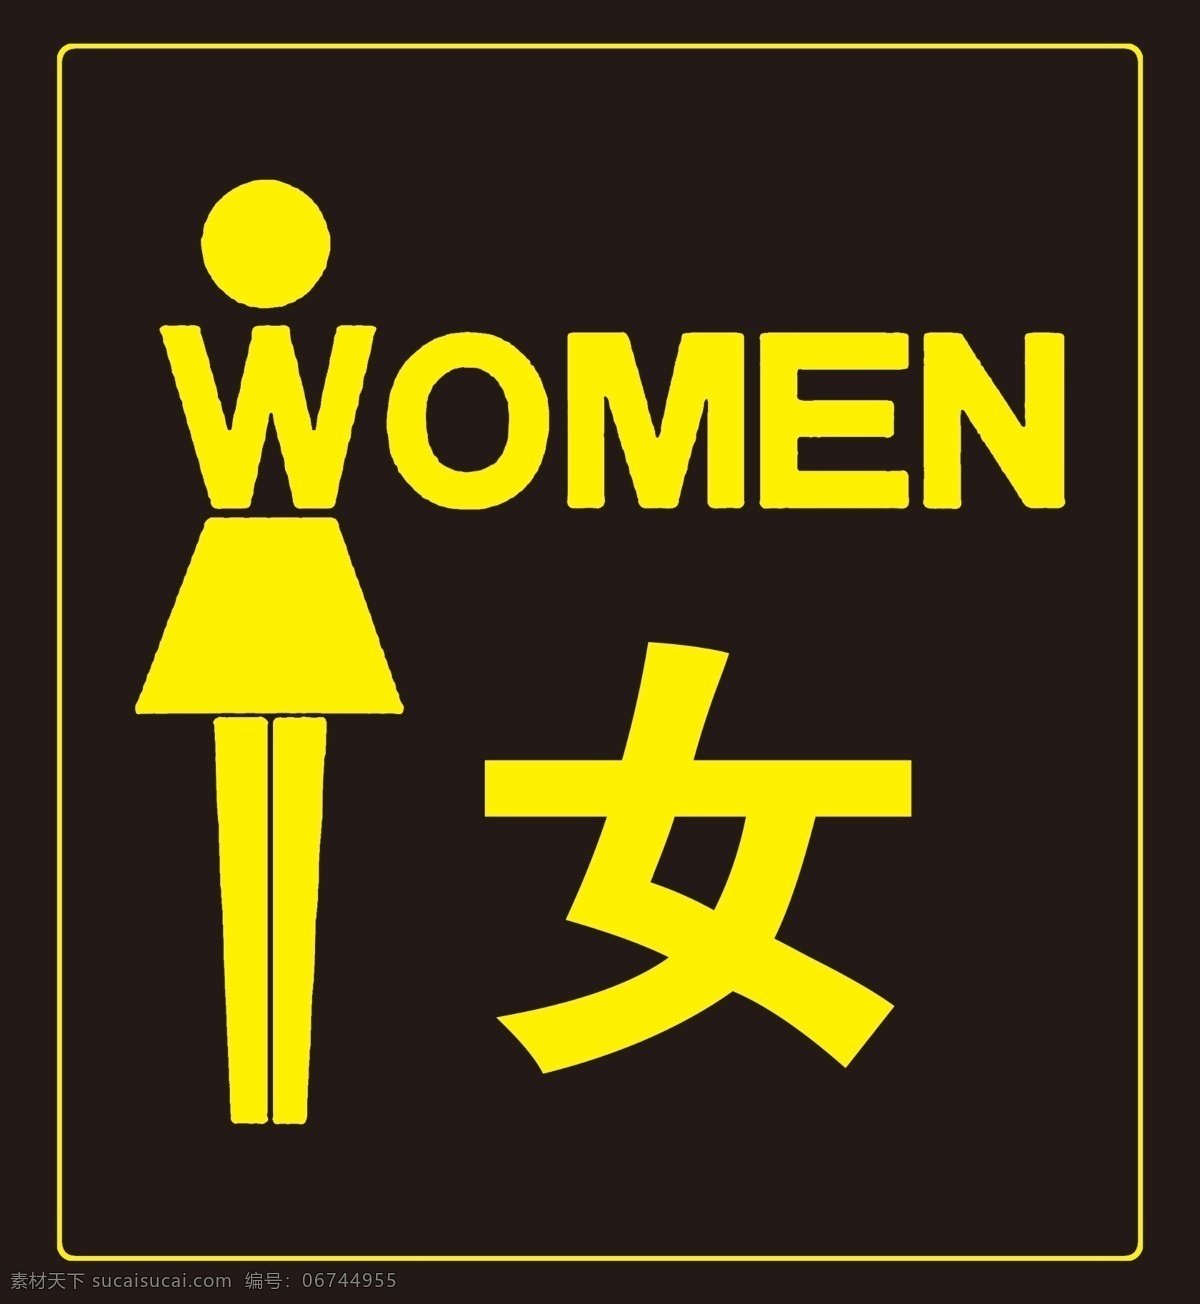 女厕所 女厕所标志 厕所 wc 国内广告设计 广告设计模板 源文件 分层